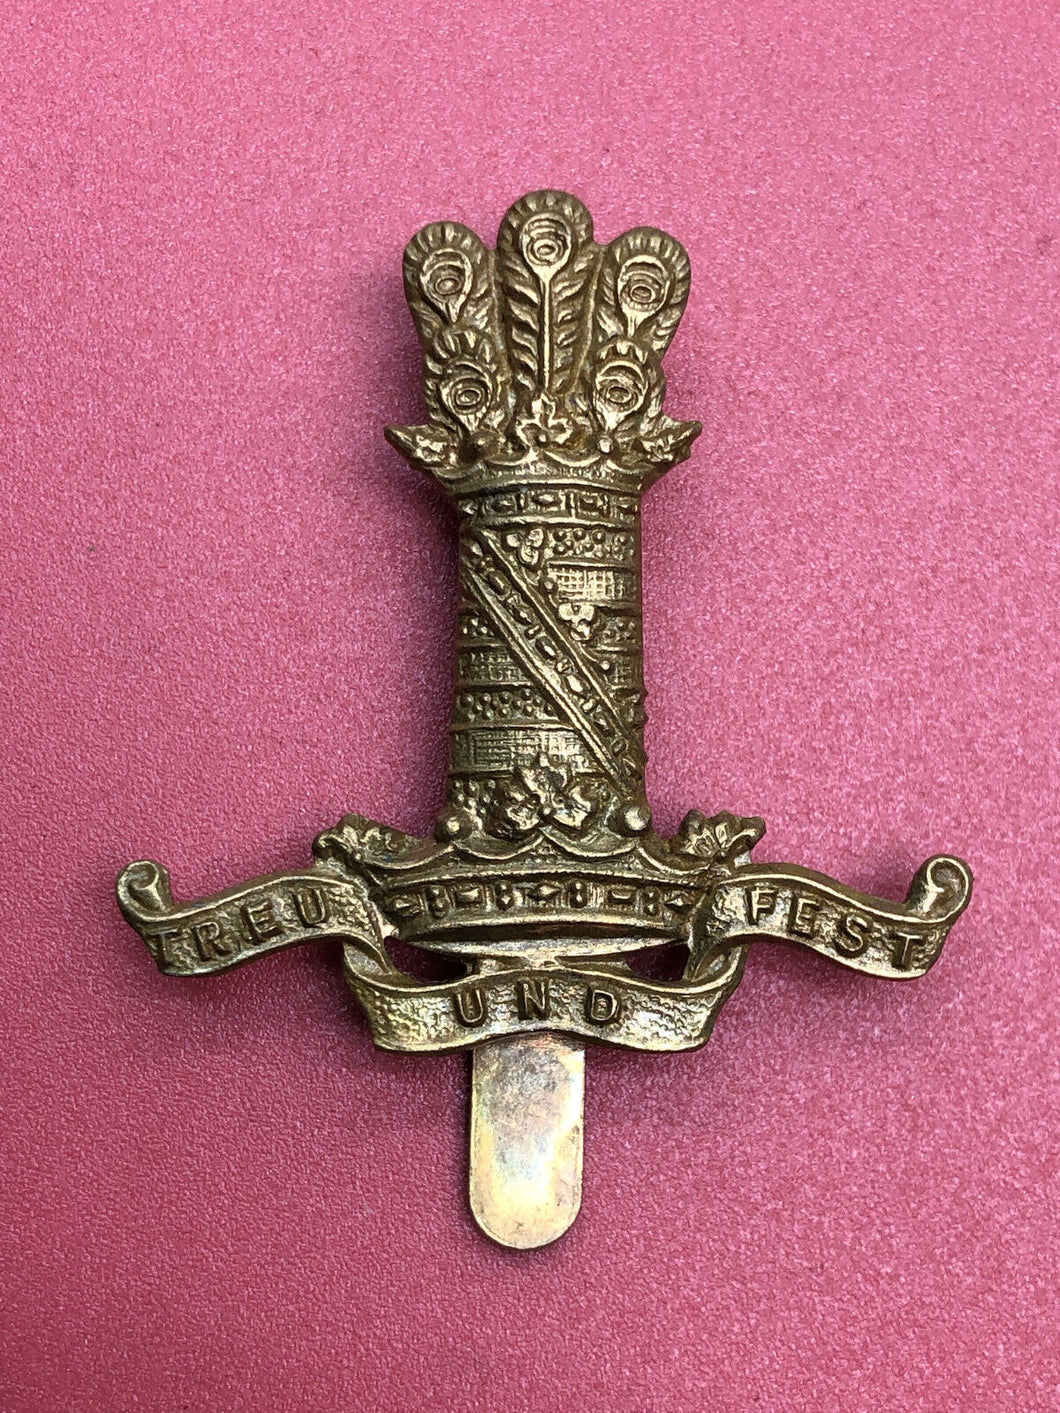 Original WW2 British Army Cap Badge - 11th Hussars Regiment